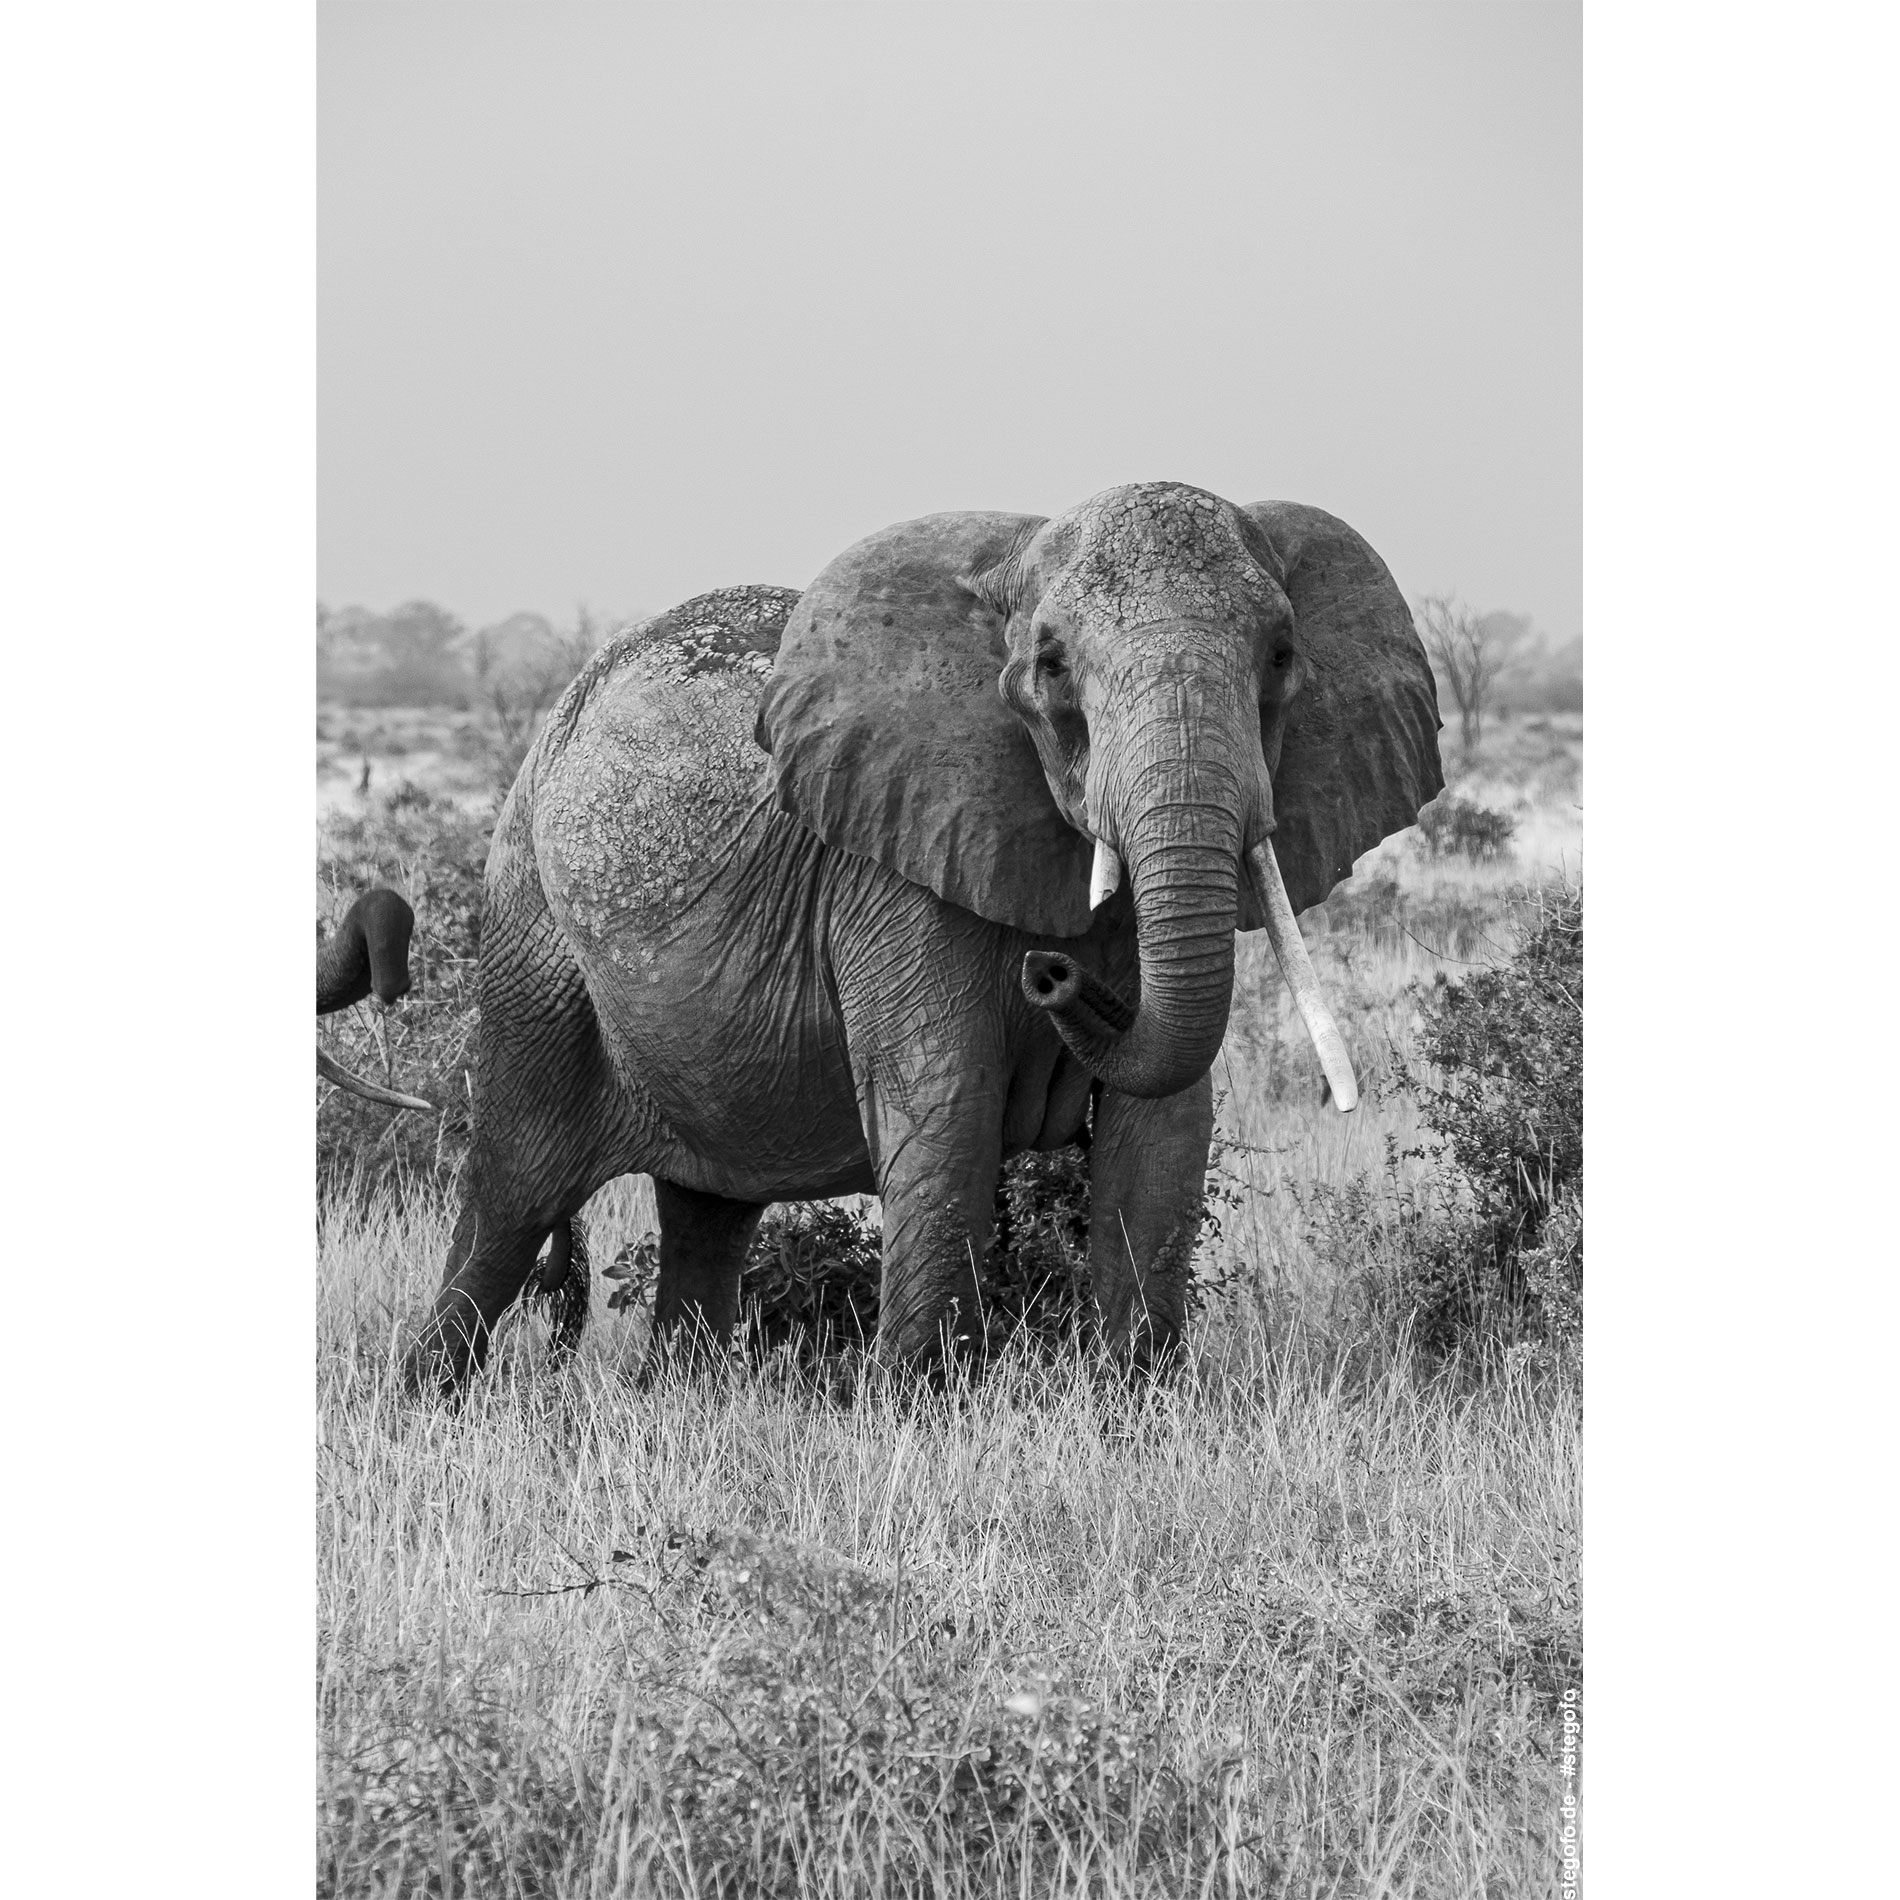 Der neugierige Elefant - Kenia - Afrika